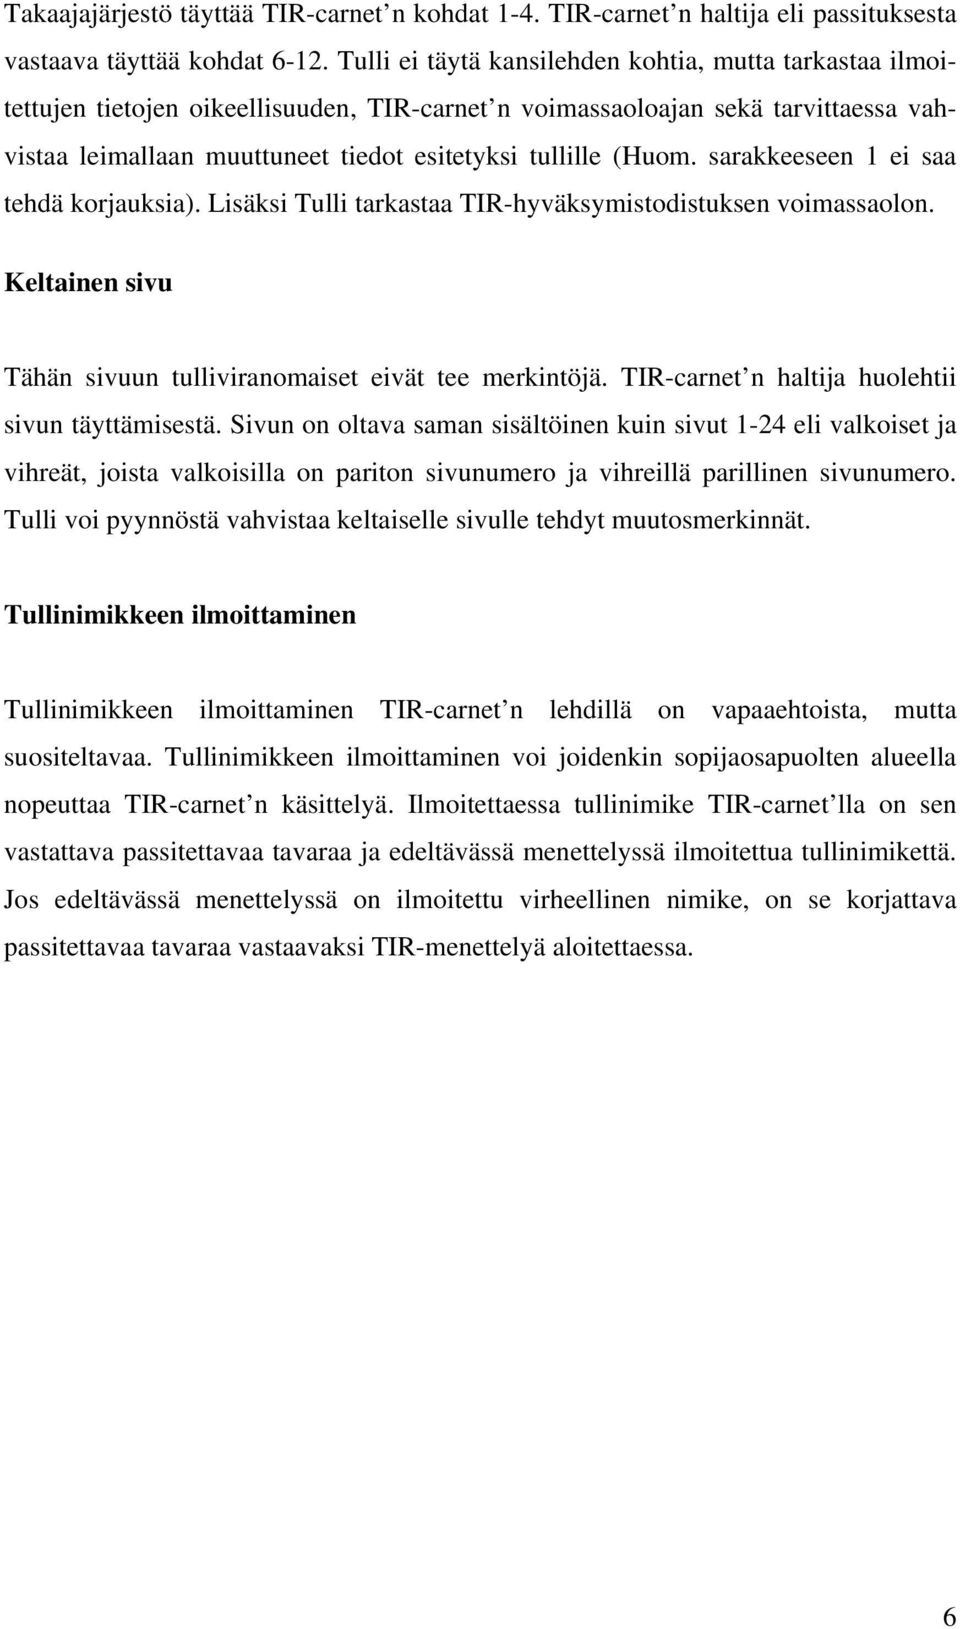 (Huom. sarakkeeseen 1 ei saa tehdä korjauksia). Lisäksi Tulli tarkastaa TIR-hyväksymistodistuksen voimassaolon. Keltainen sivu Tähän sivuun tulliviranomaiset eivät tee merkintöjä.